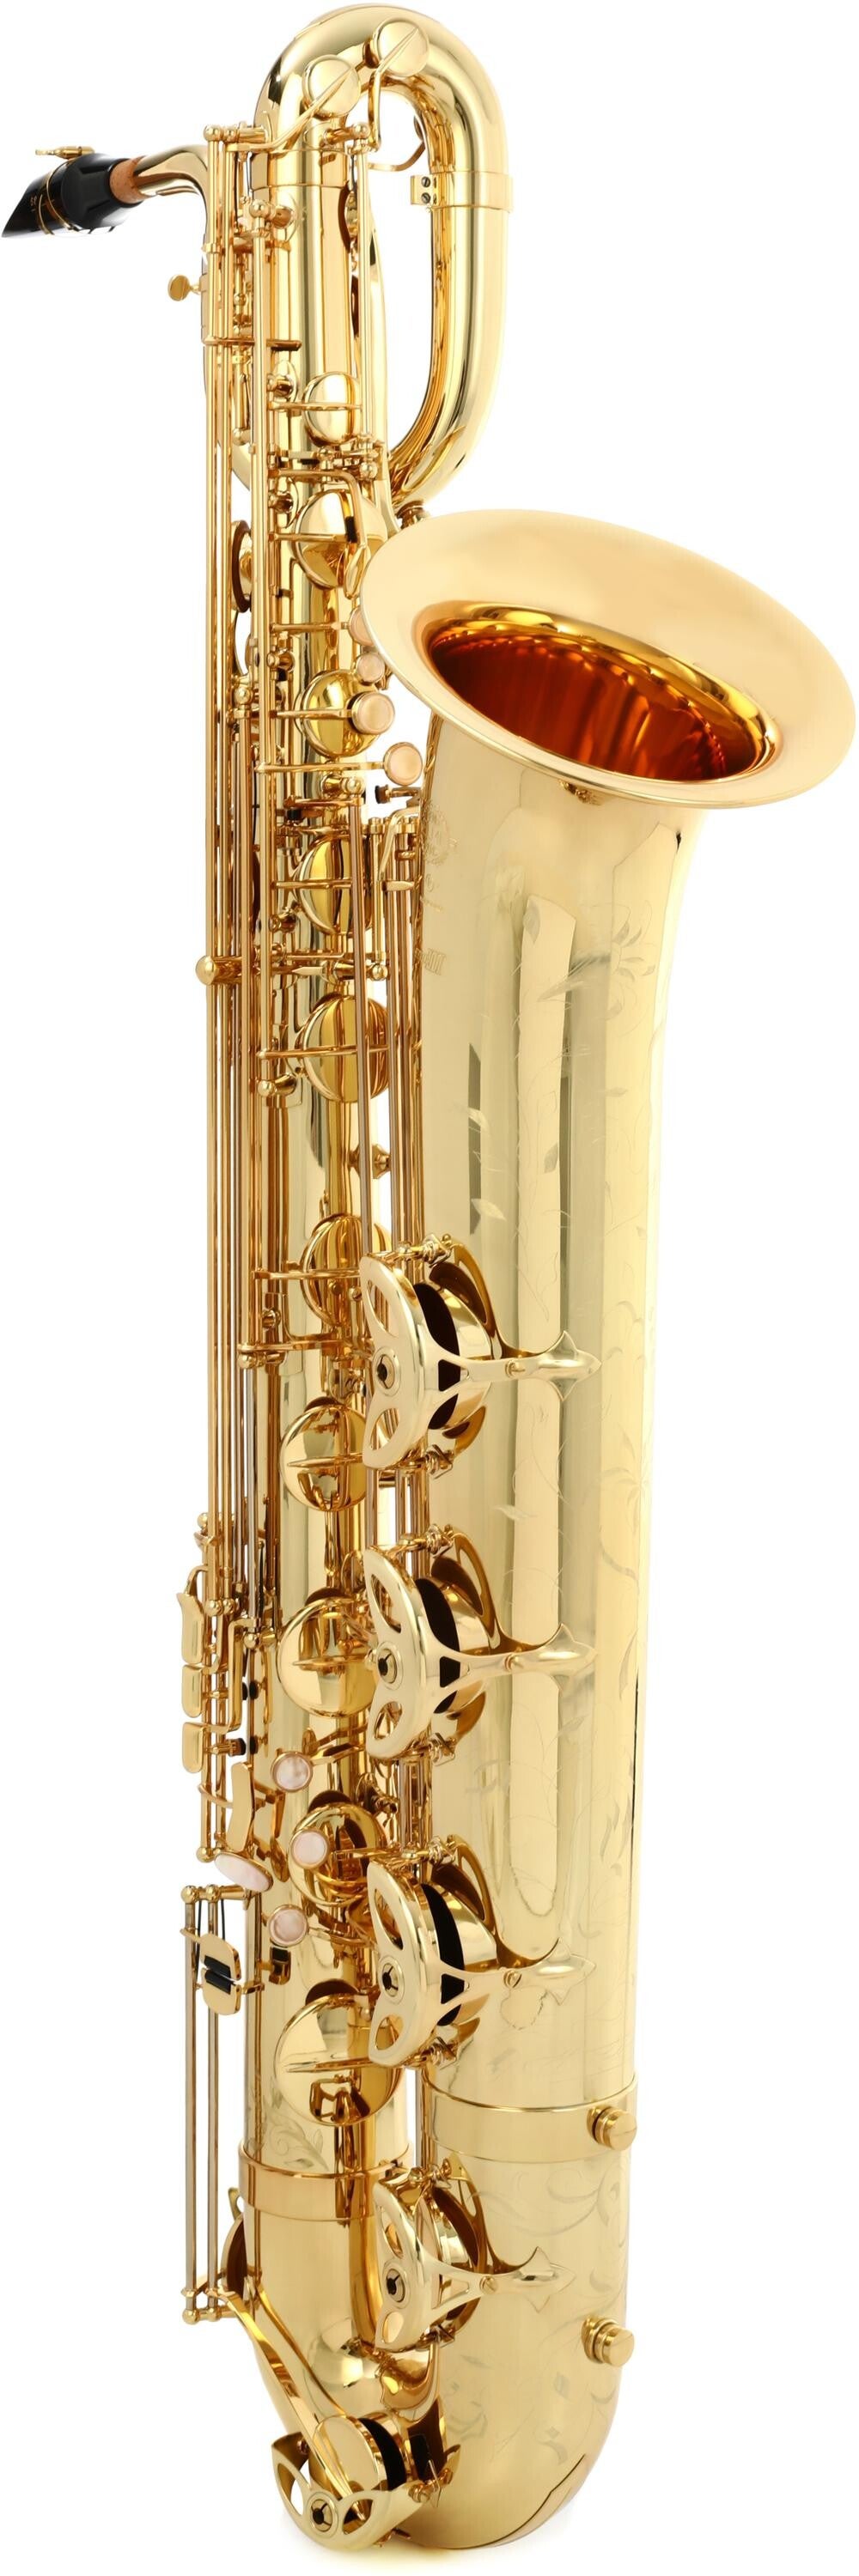 月末価格 Brilhart Tonalin Baritone saxophone - 管楽器